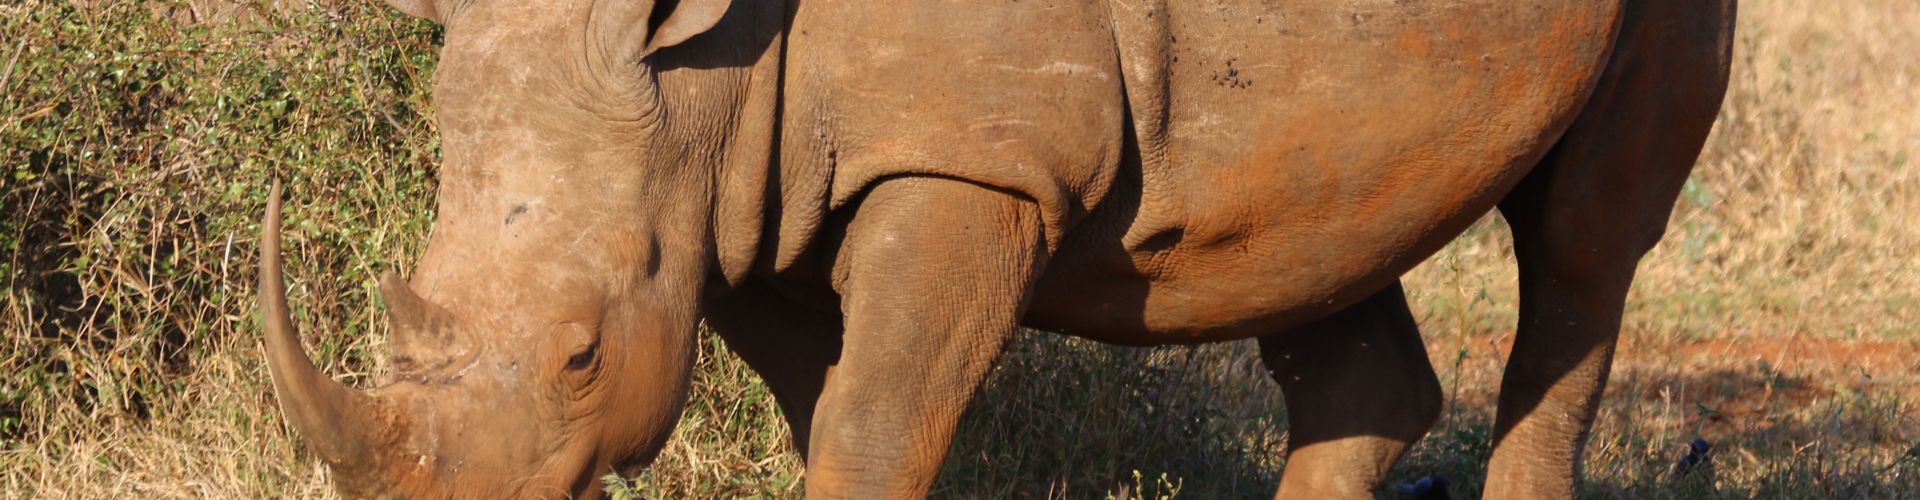 Retrato en primer plano de un rinoceronte, una de las especies más amenazadas del mundo.